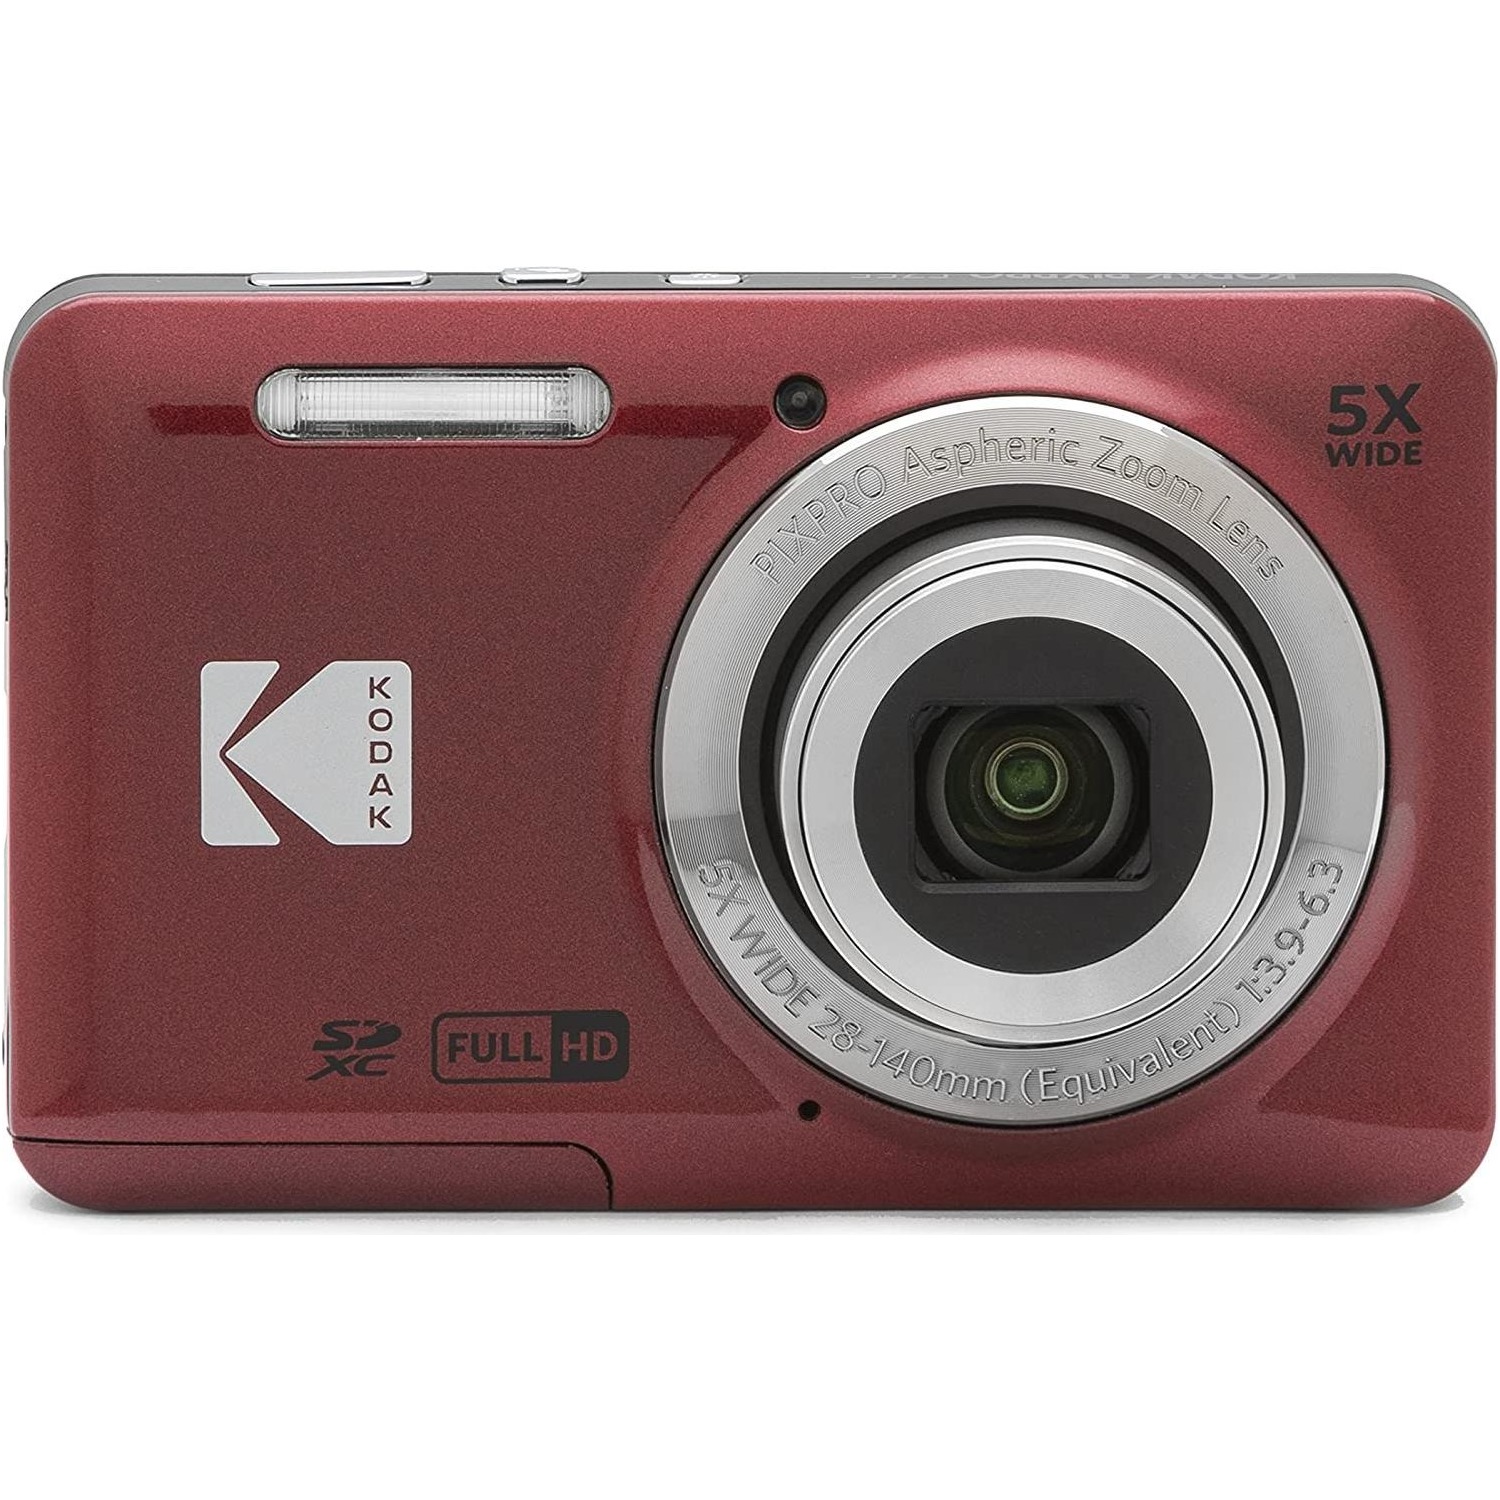 Immagine per Fotocamera digitale Kodak KF55RD colore rosso da DIMOStore